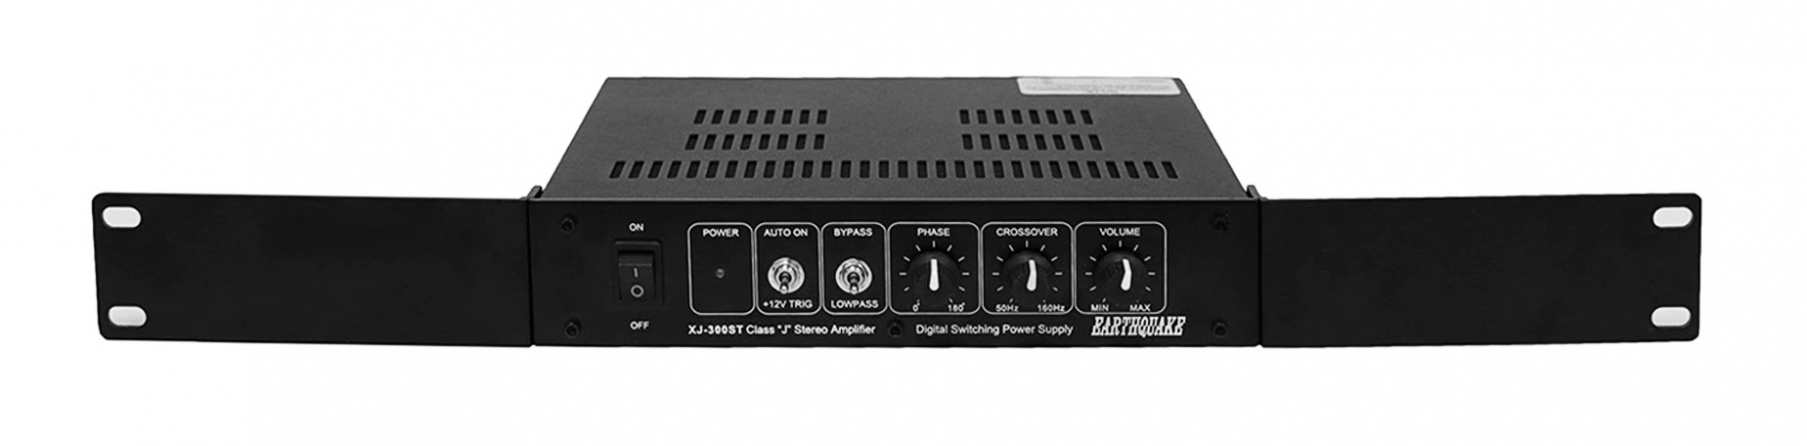 Amplificatore stereo compatto multicanale Eartquake "XJ-300ST", con 2 canali e 170W